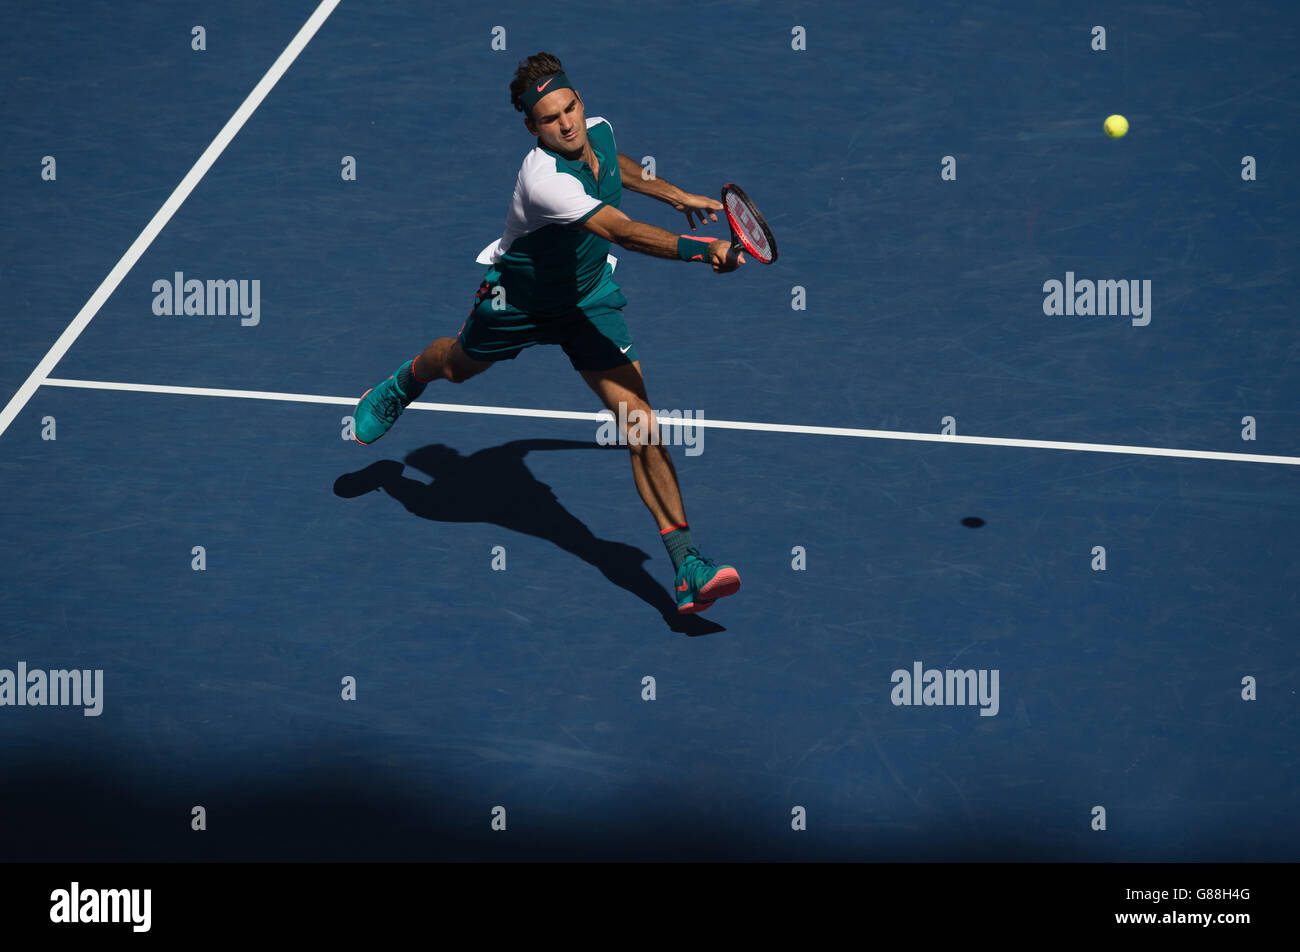 S-Einzelspiel gegen Philipp Kohlschreiber am 6. Tag der US Open bei den US Open im Billie Jean King National Tennis Center am 5. September 2015 in New York, USA. Stockfoto